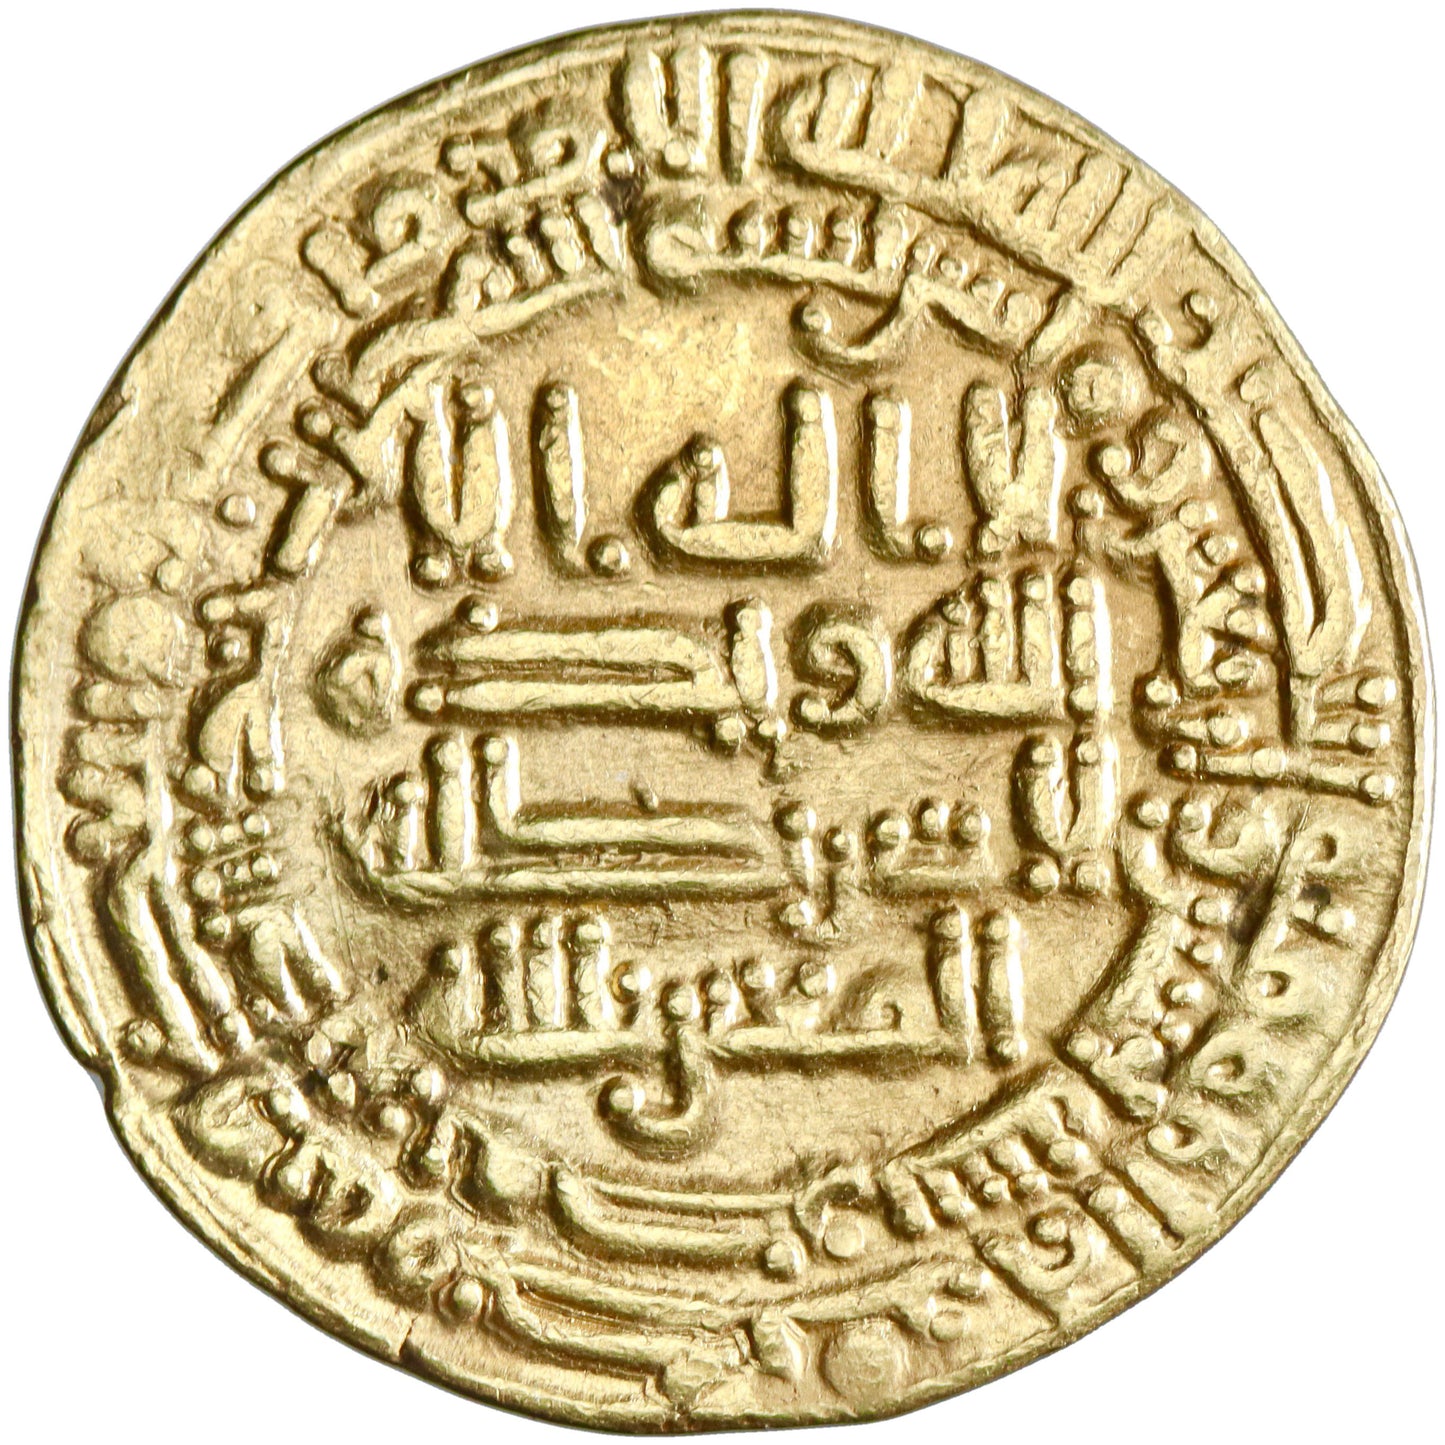 Abbasid, al-Mutawakkil 'alallah, gold dinar, Misr (Egypt) mint, AH 242, citing al-Mu'tazz